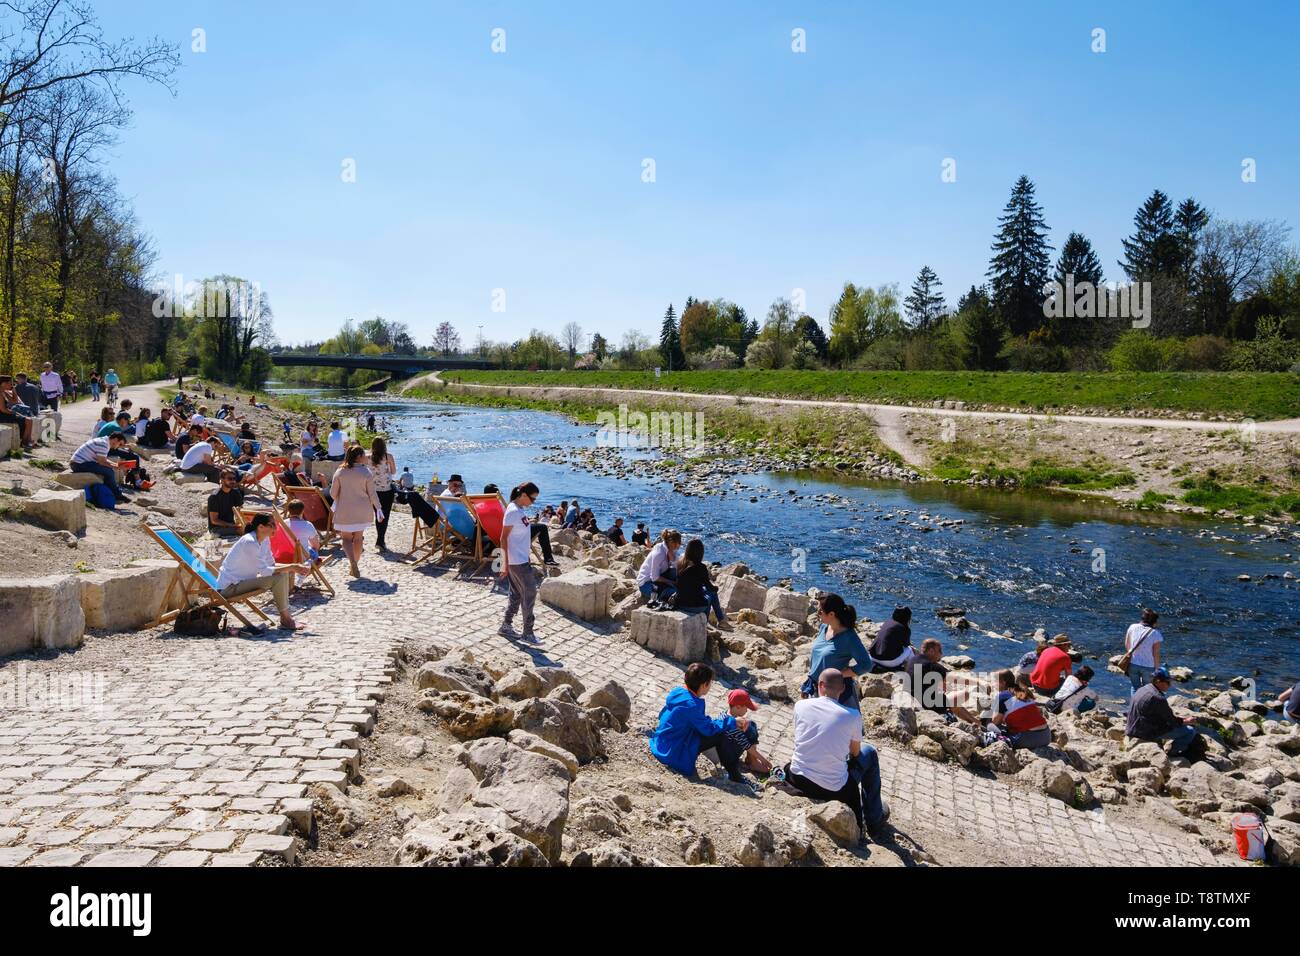 Le persone godono di bel tempo al fiume Wertach, presso il giardino della birra Kulperhutte, Augsburg-Goggingen, Svevia, Baviera, Germania Foto Stock